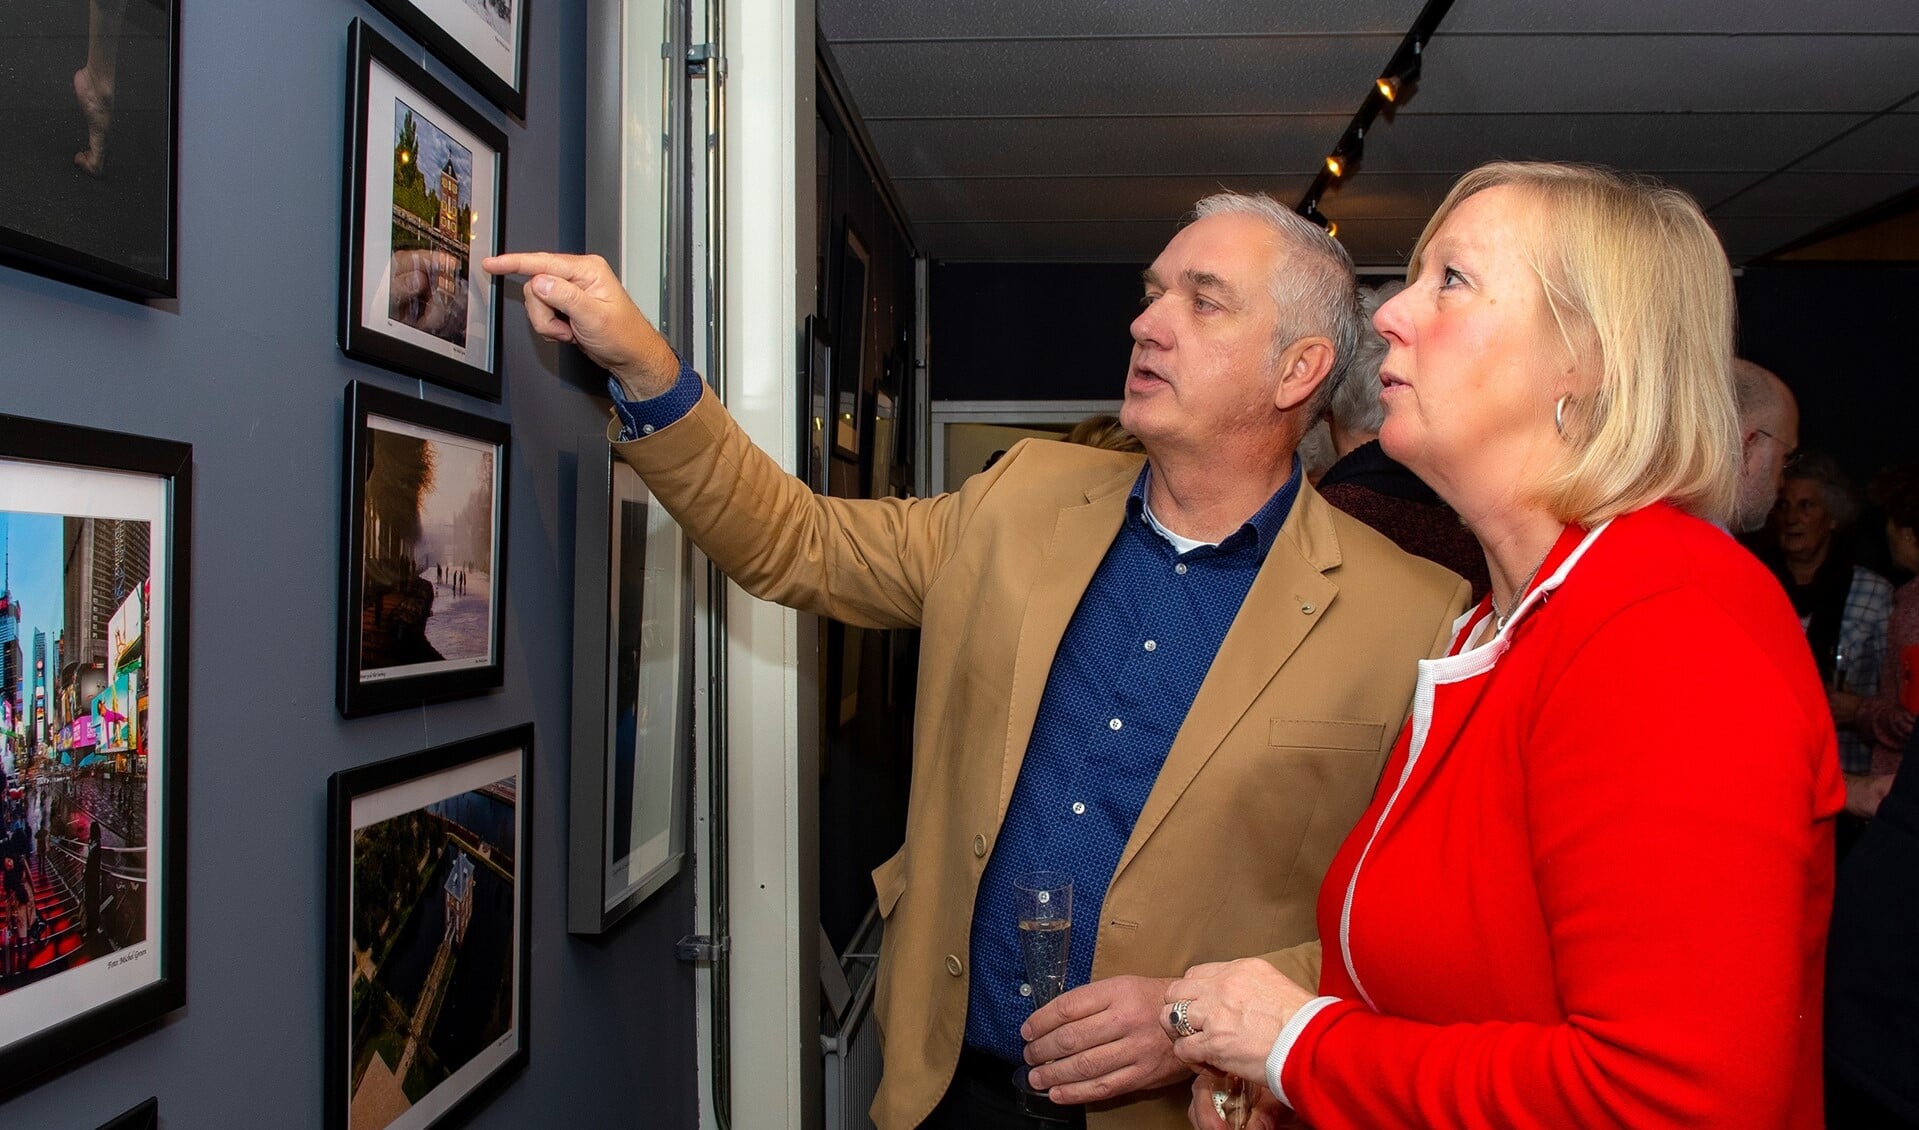 Fotograaf Michel Groen geeft wethouder Astrid van Eekelen uitleg bij de foto's (foto: Nico van der Ven).